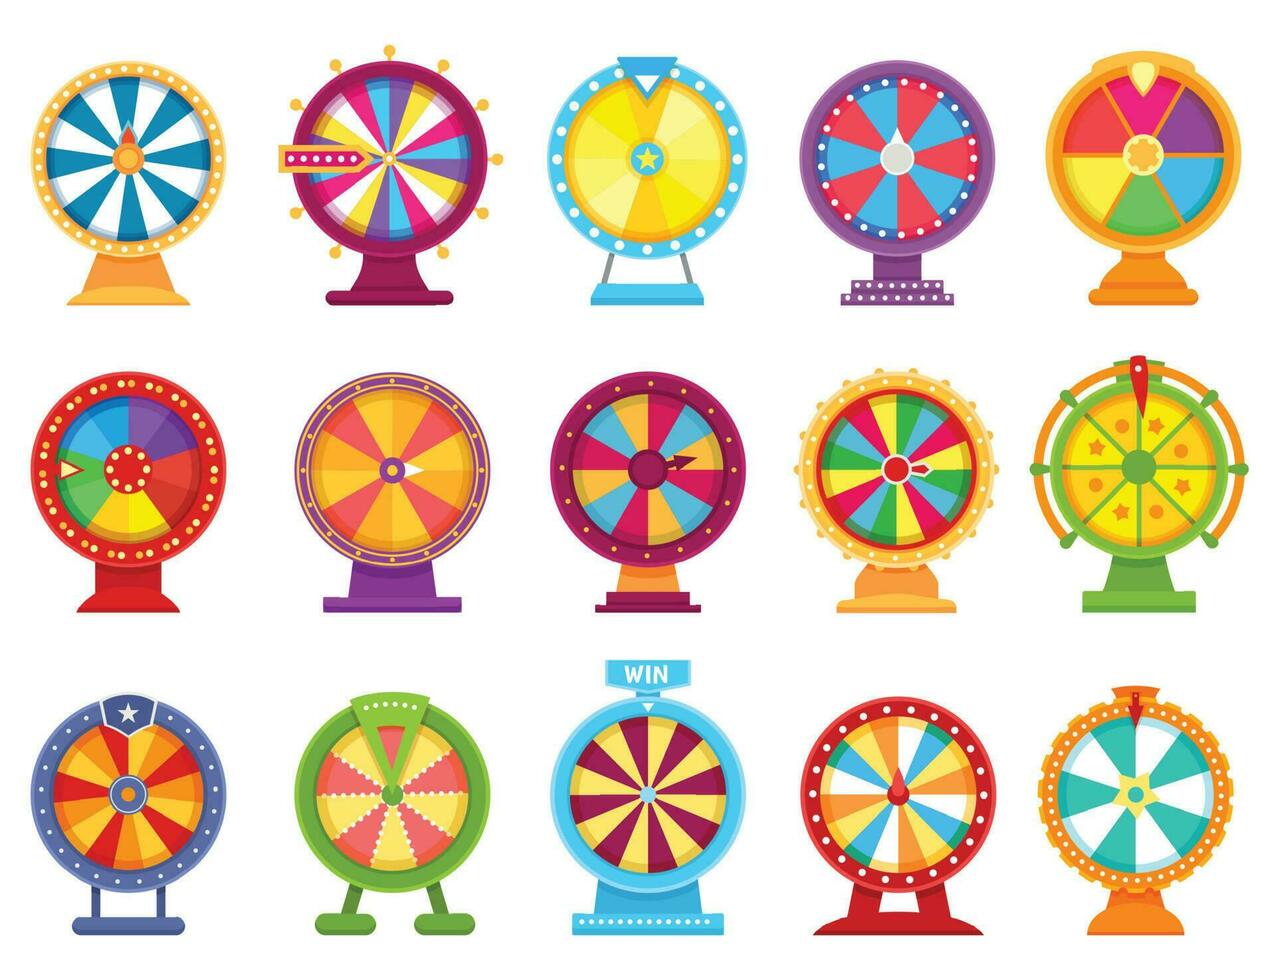 förmögenhet hjul, spinning roulett, tur- snurra spel. kasino hasardspel hjul, färgrik vändning roulett, jackpott lotteri spel platt vektor uppsättning